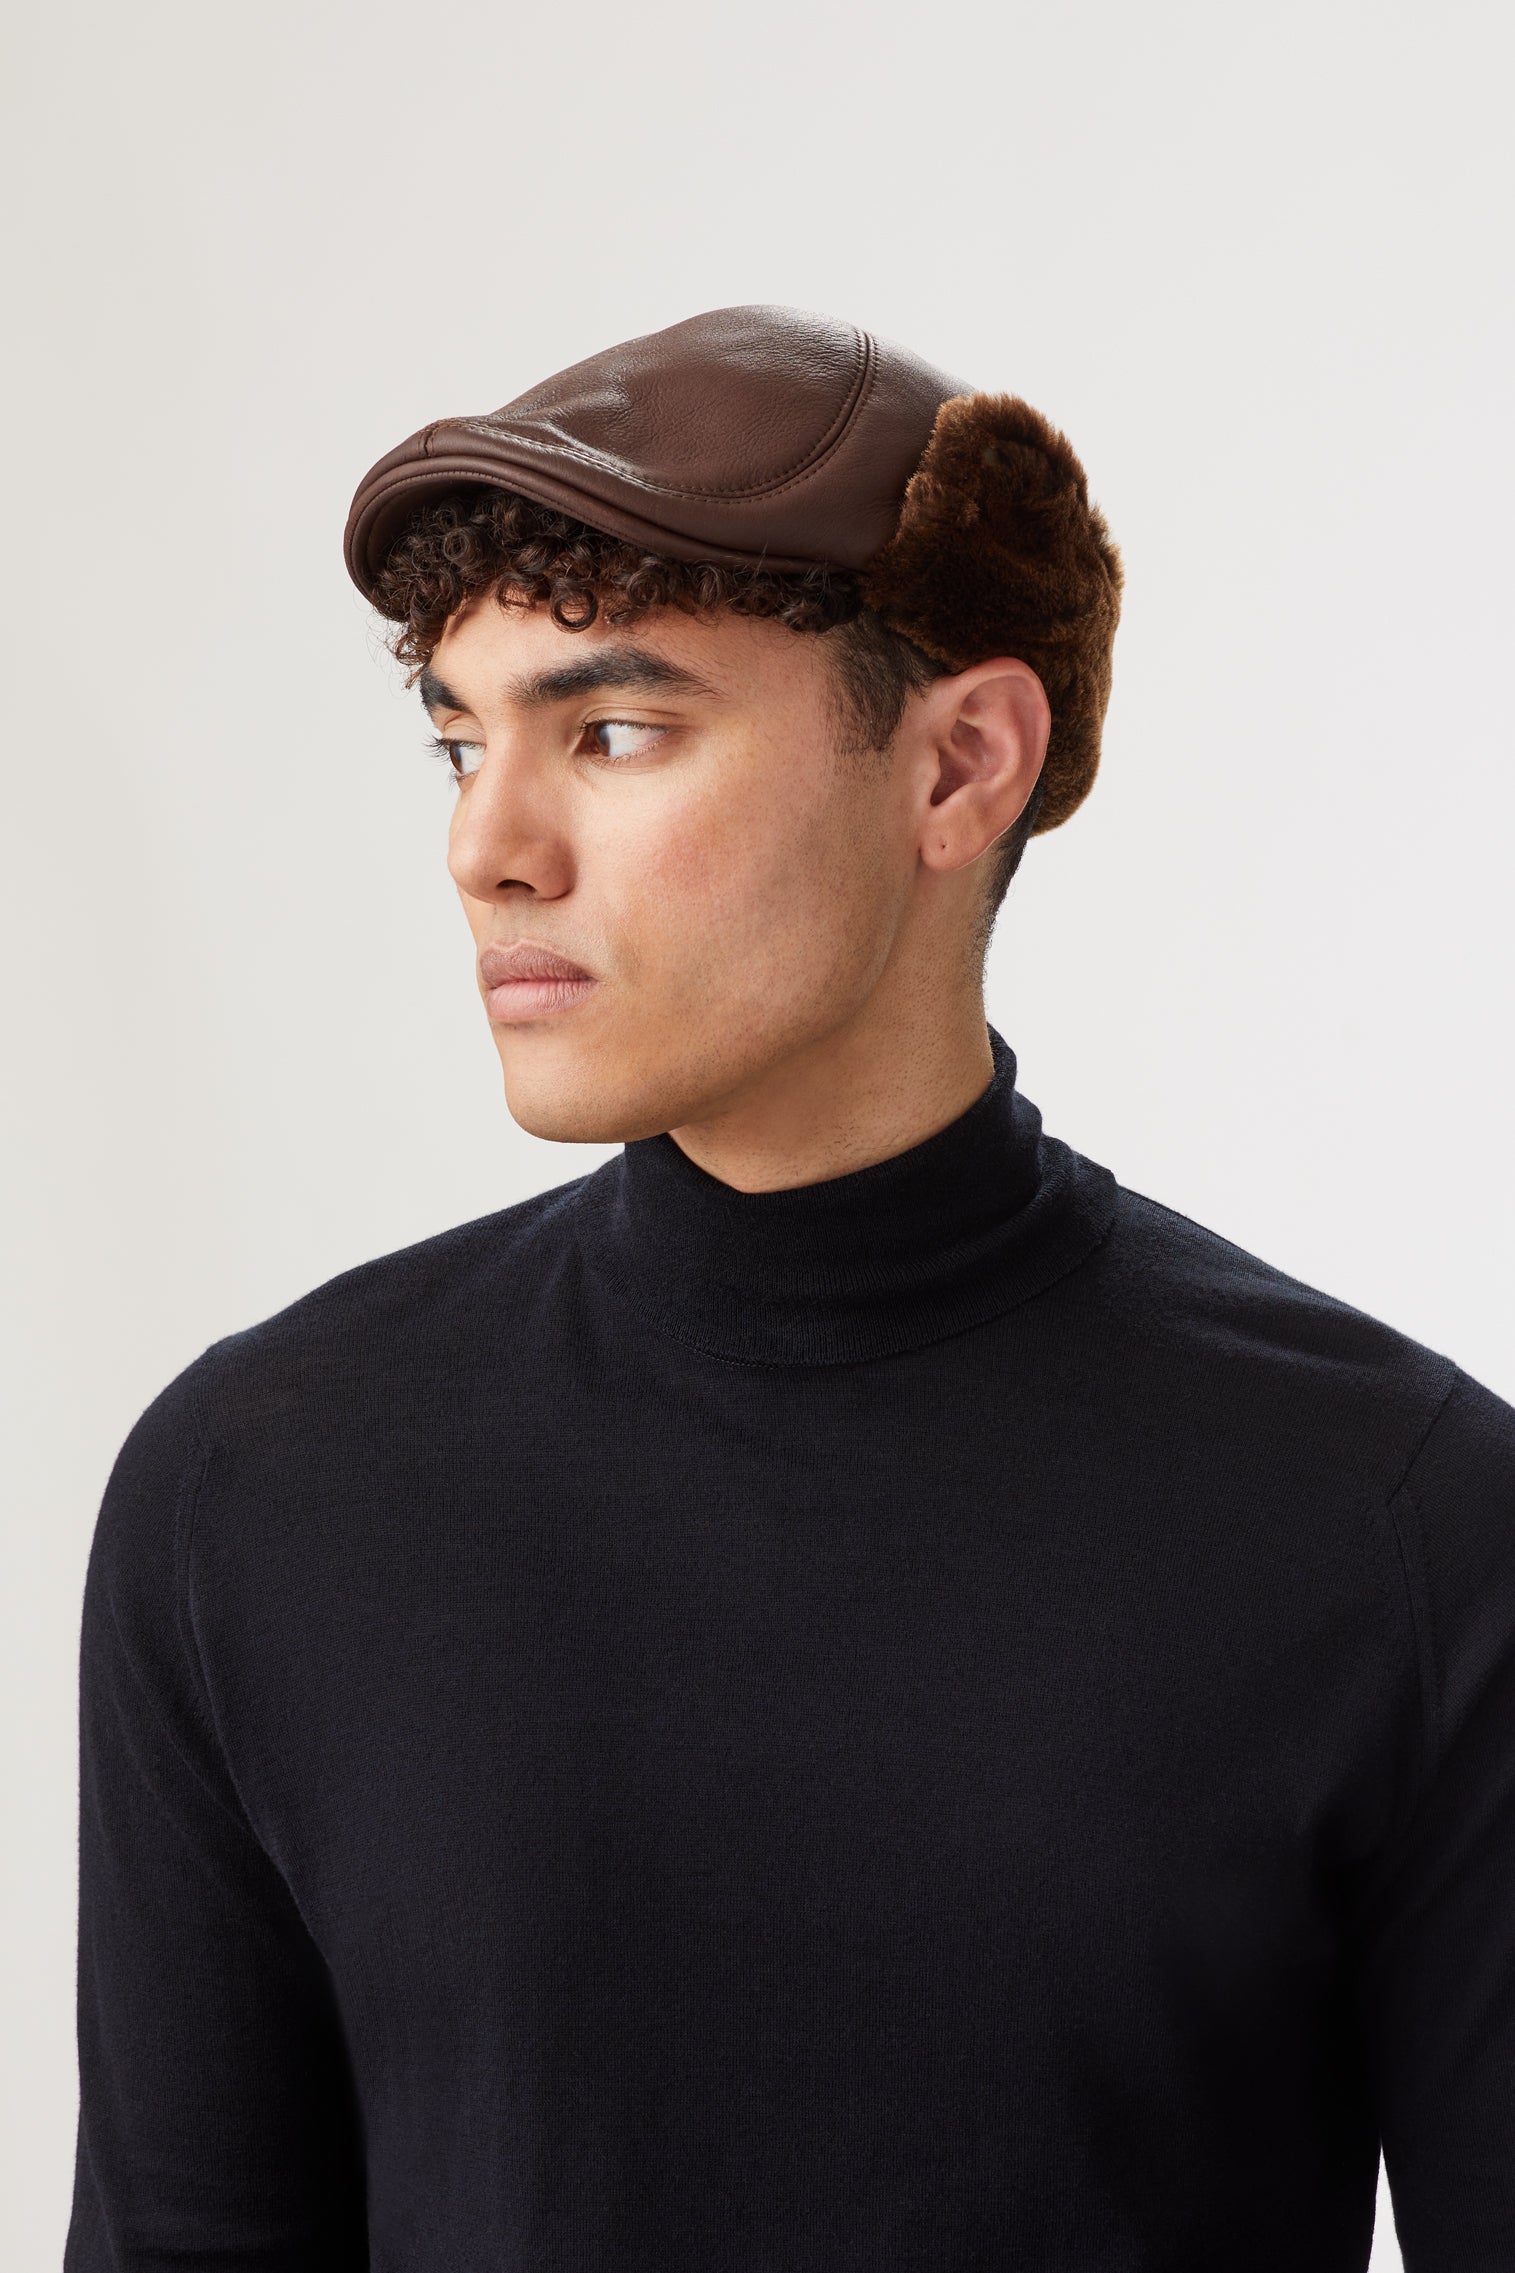 Alberta Leather Flat Cap - Men's Hats - Lock & Co. Hatters London UK